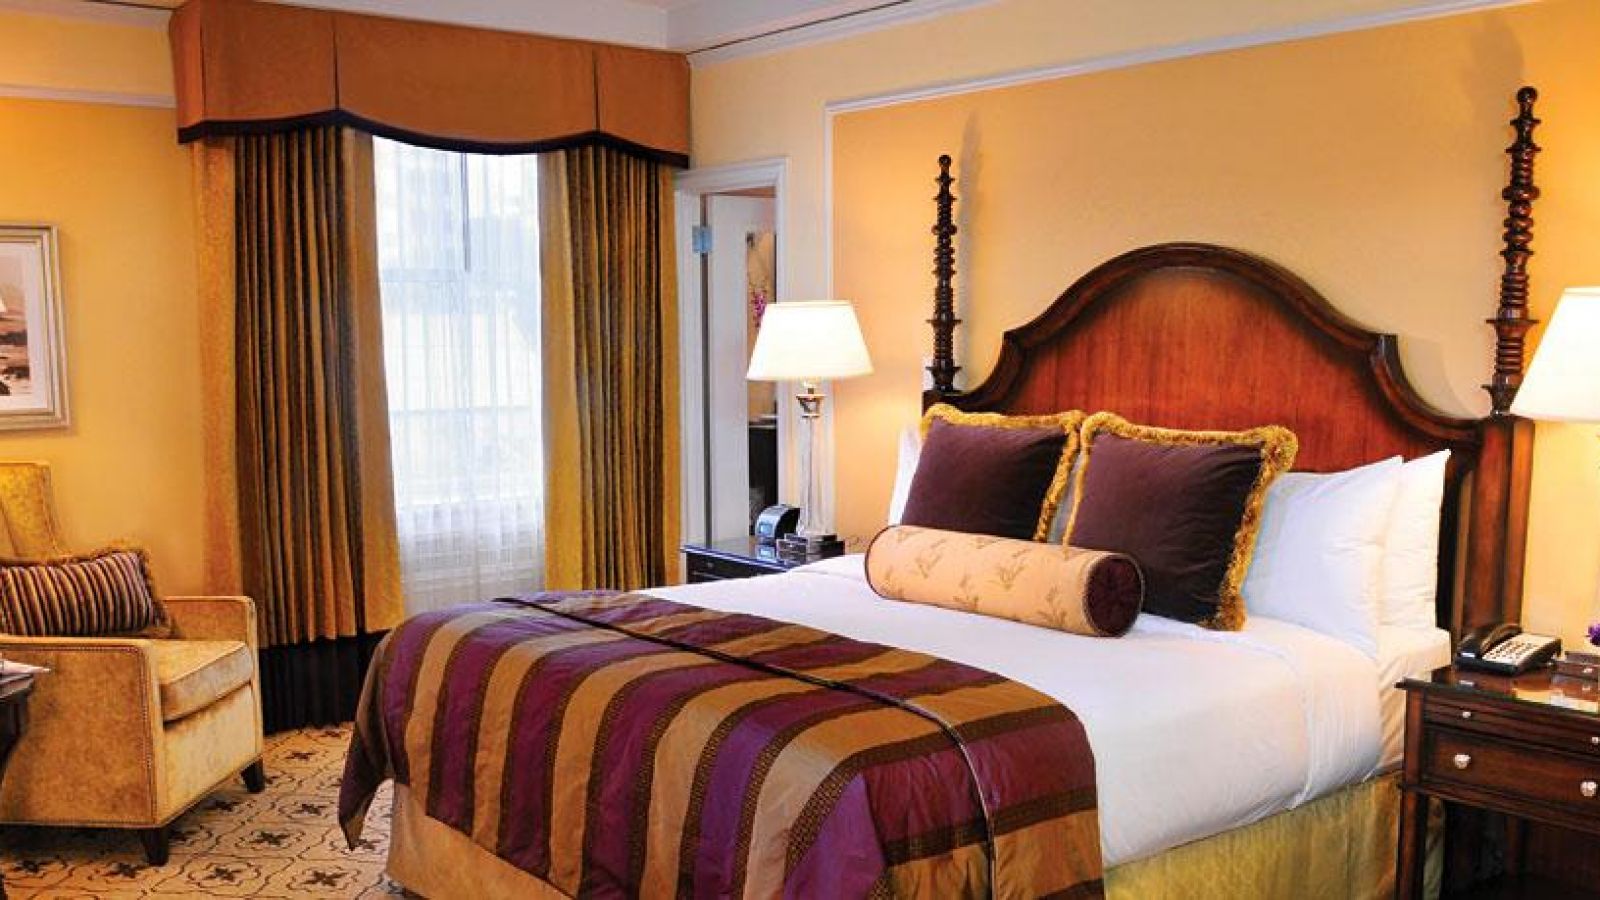 Fairmont Hotel Vancouver - guest room